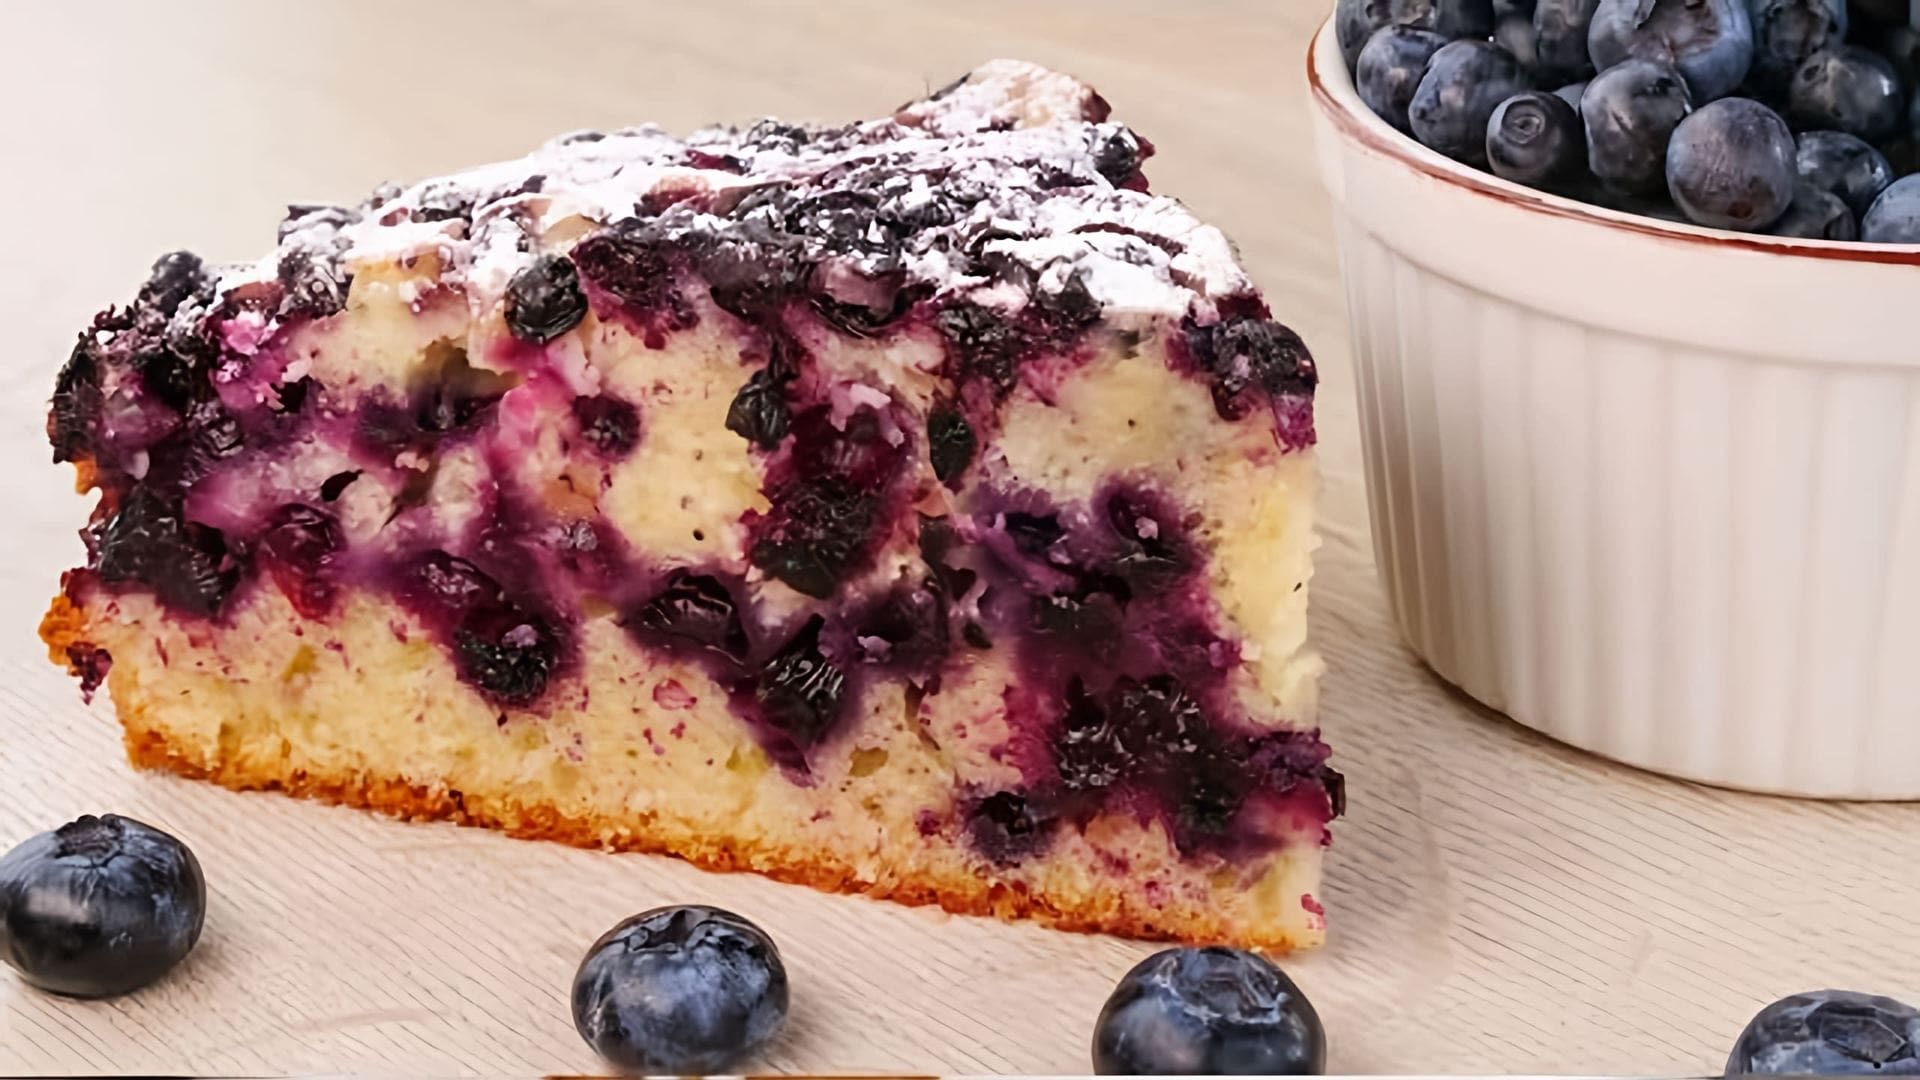 В этом видео демонстрируется рецепт приготовления черничного пирога